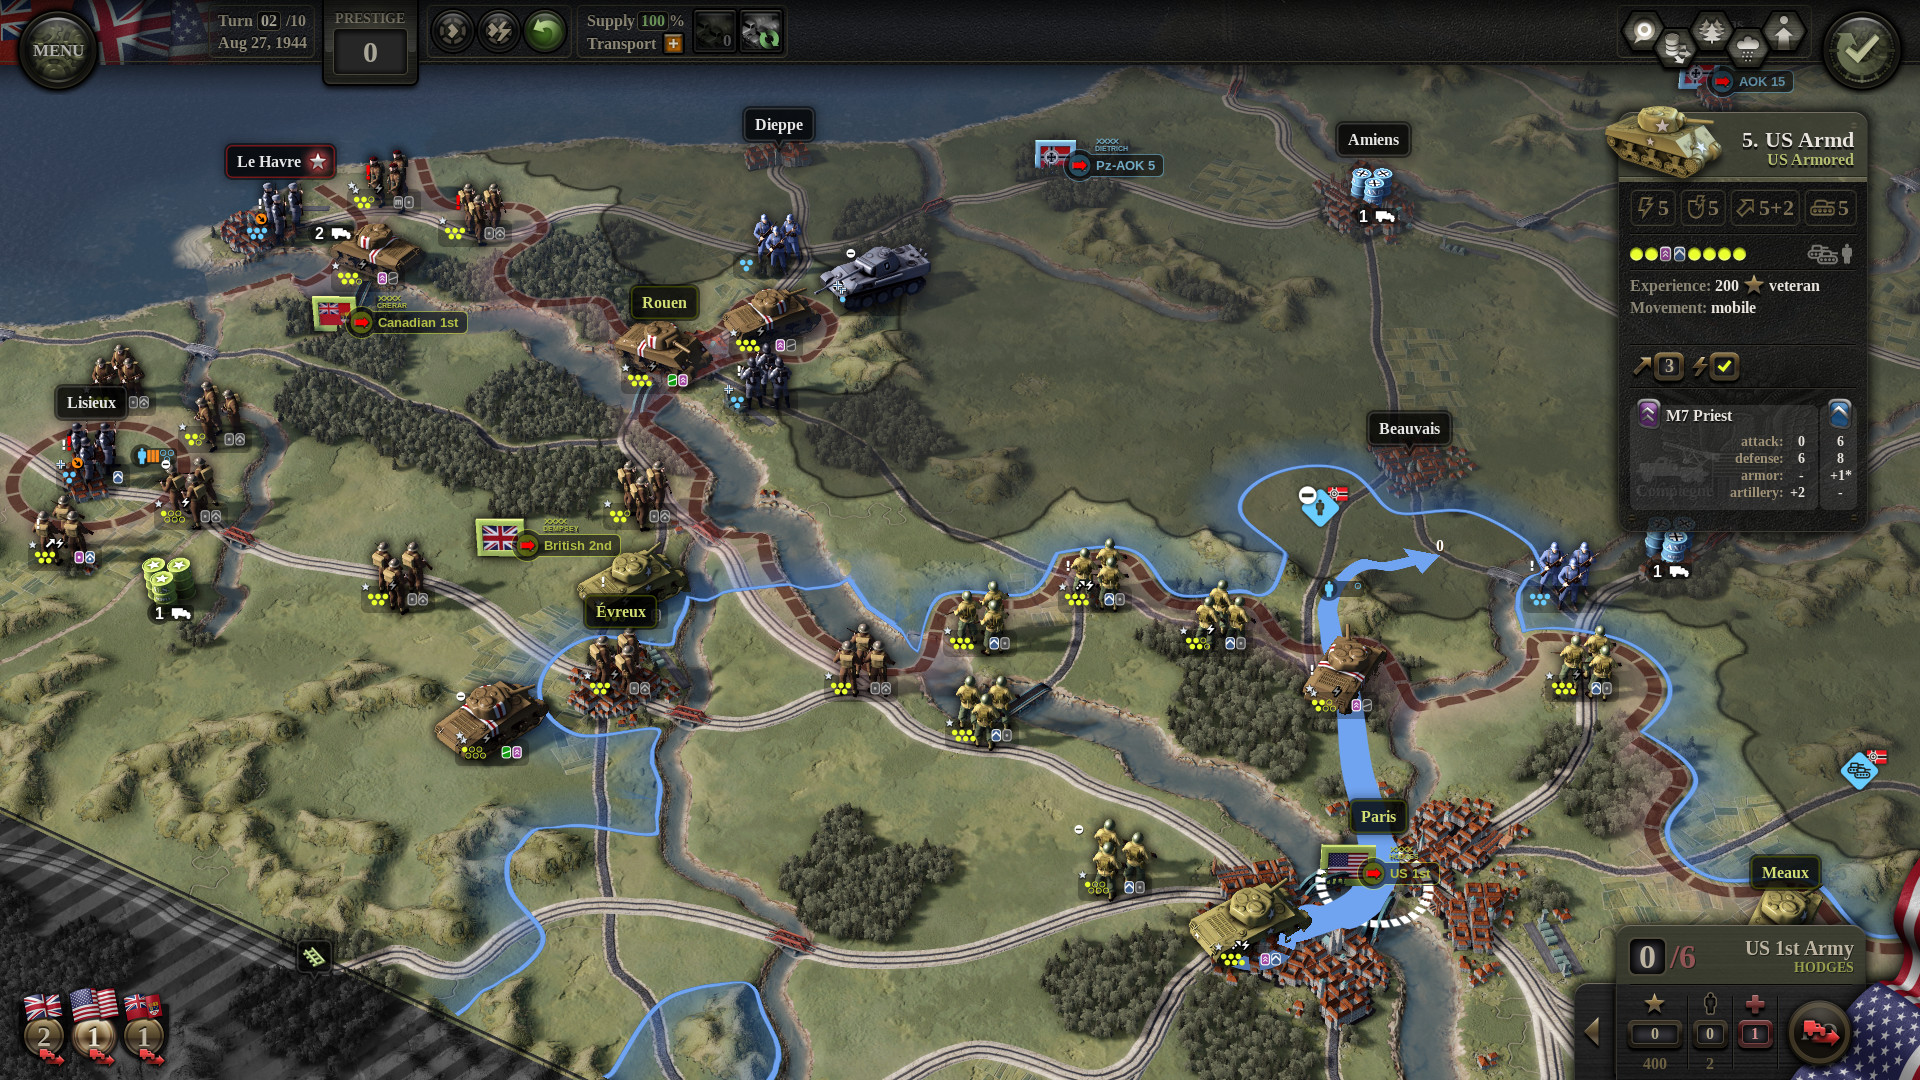 Bästa krigsspel: Enhet av kommando 2. Bild visar en karta med olika strategiska rutter och soldater som anges på den